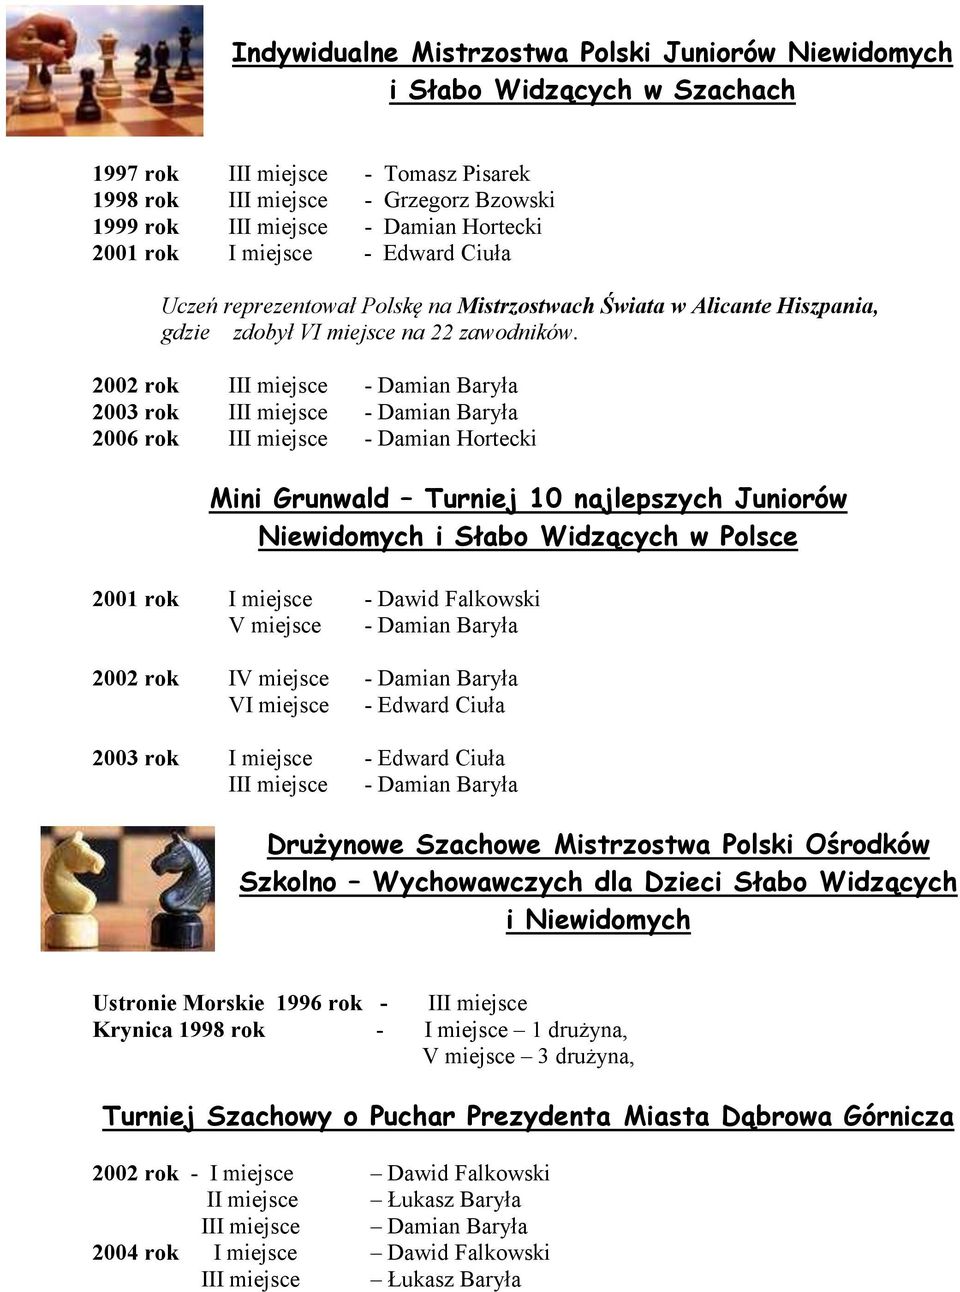 2002 rok III miejsce - Damian Baryła 2003 rok III miejsce - Damian Baryła 2006 rok III miejsce - Damian Hortecki Mini Grunwald Turniej 10 najlepszych Juniorów Niewidomych i Słabo Widzących w Polsce